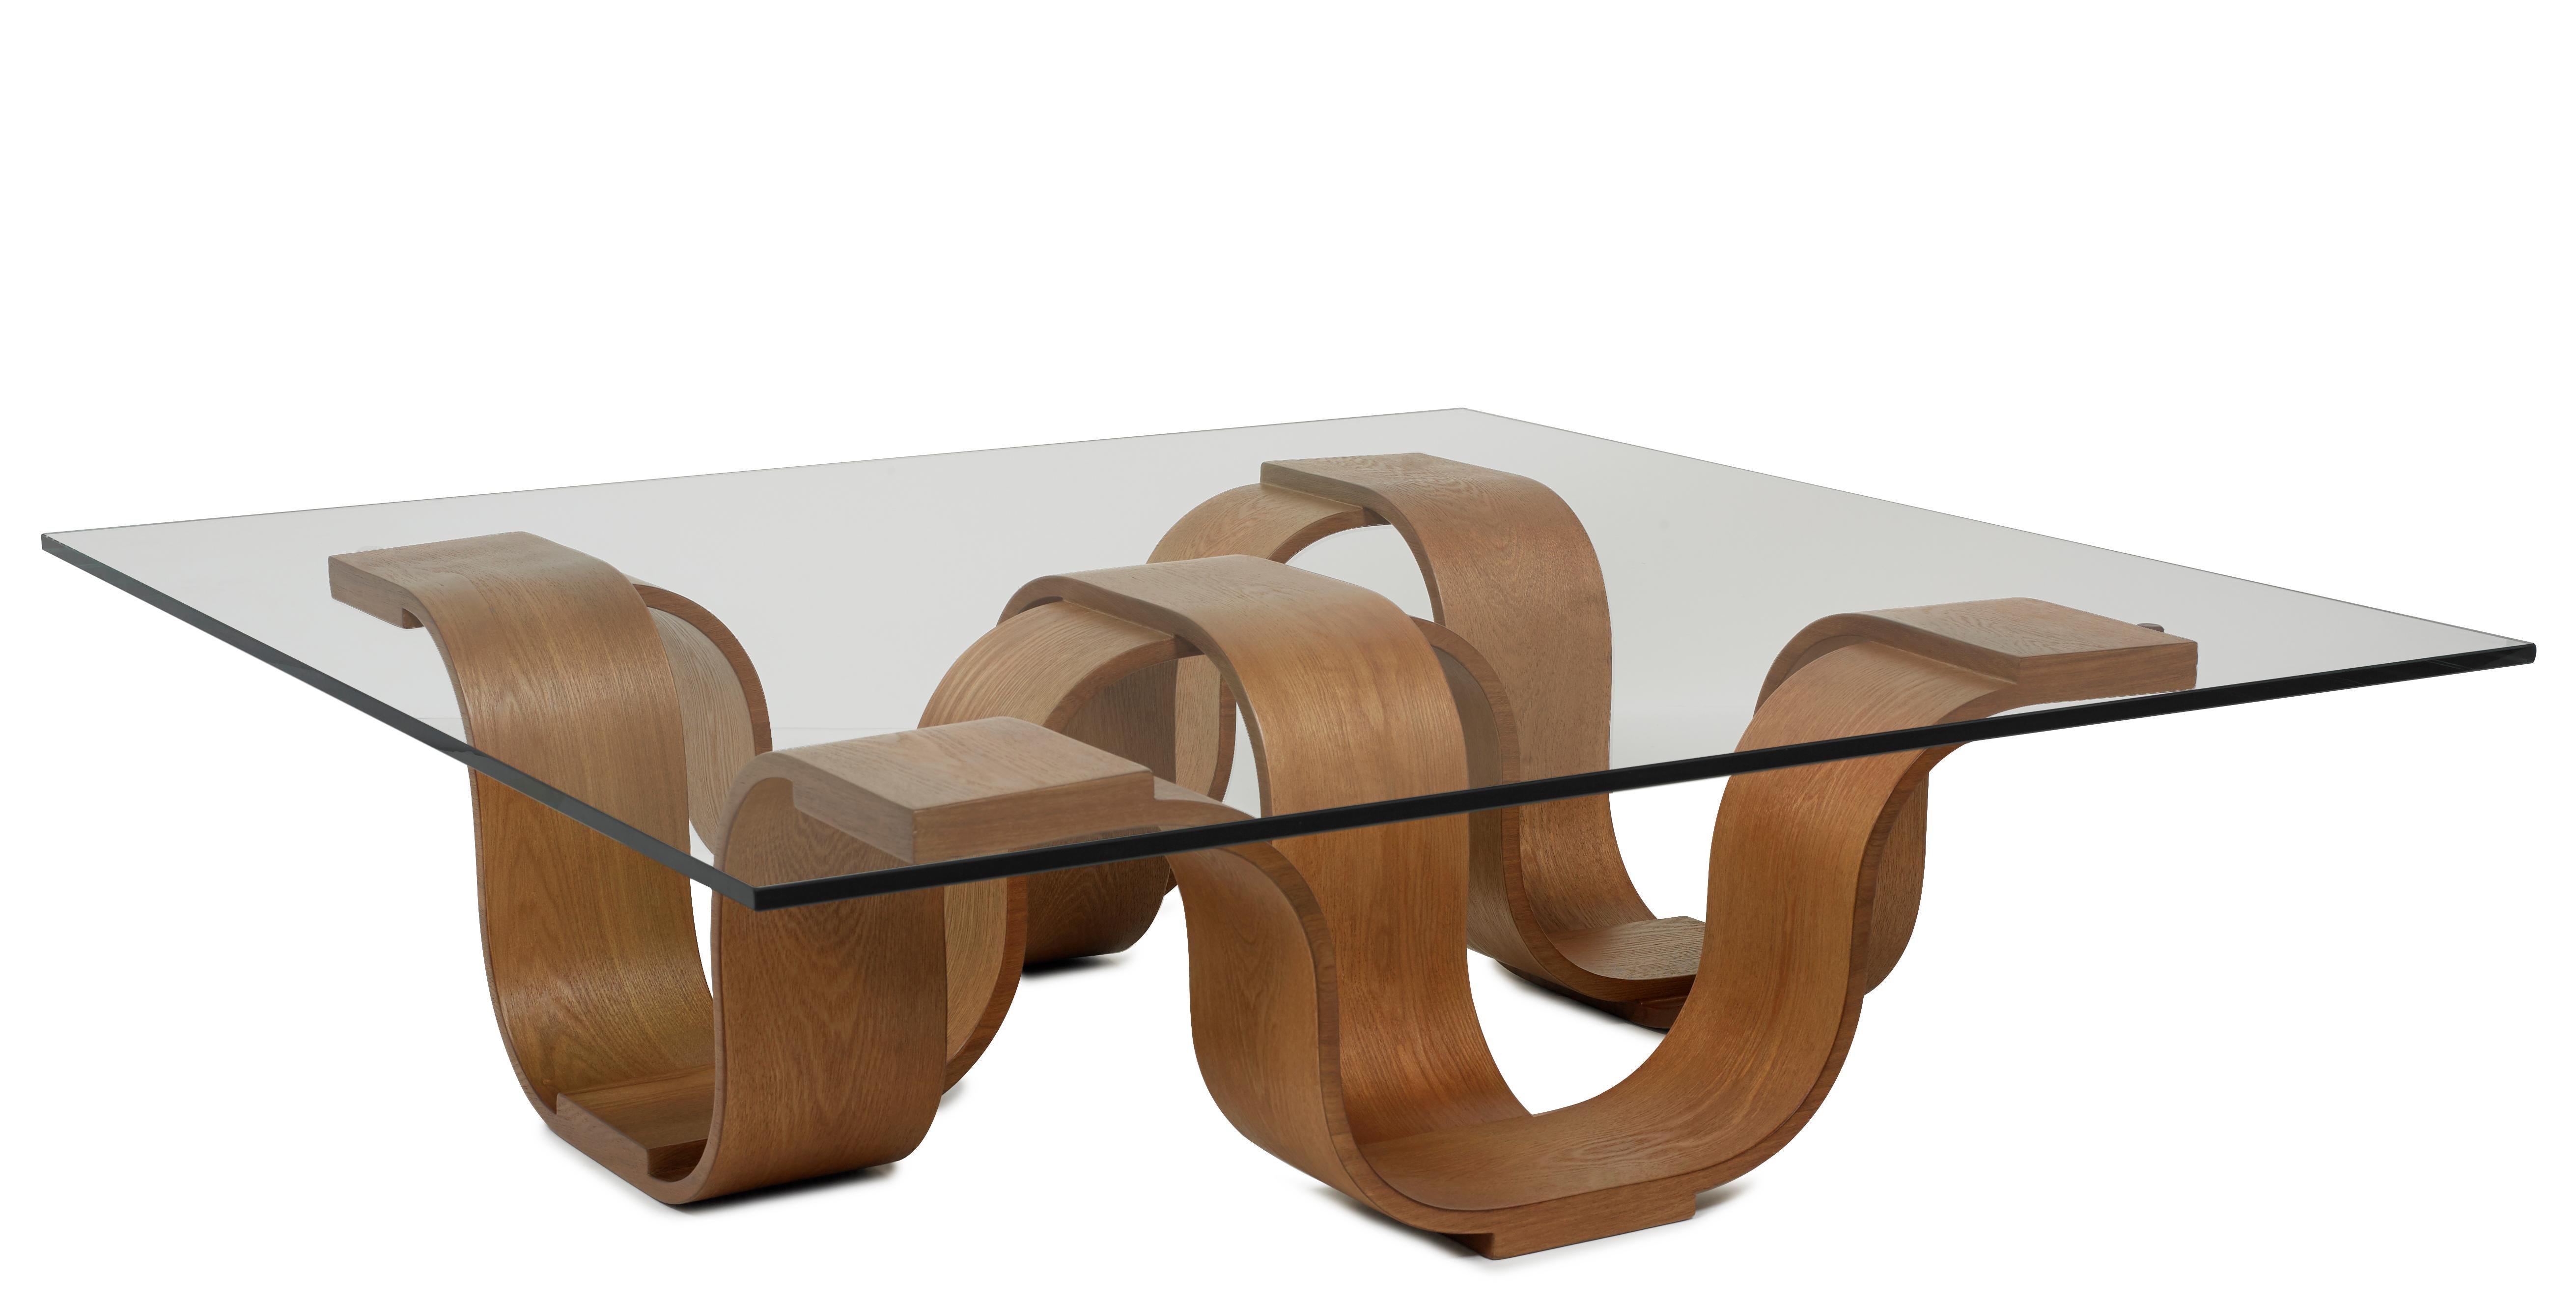 La table à cocktail carrée d'Oggetti se caractérise par des courbes et des plis qui lui confèrent un aspect organique des plus agréables. Disponible en brun moyen ou en gris, le bois de châtaignier présente un magnifique veinage naturel qui ressort